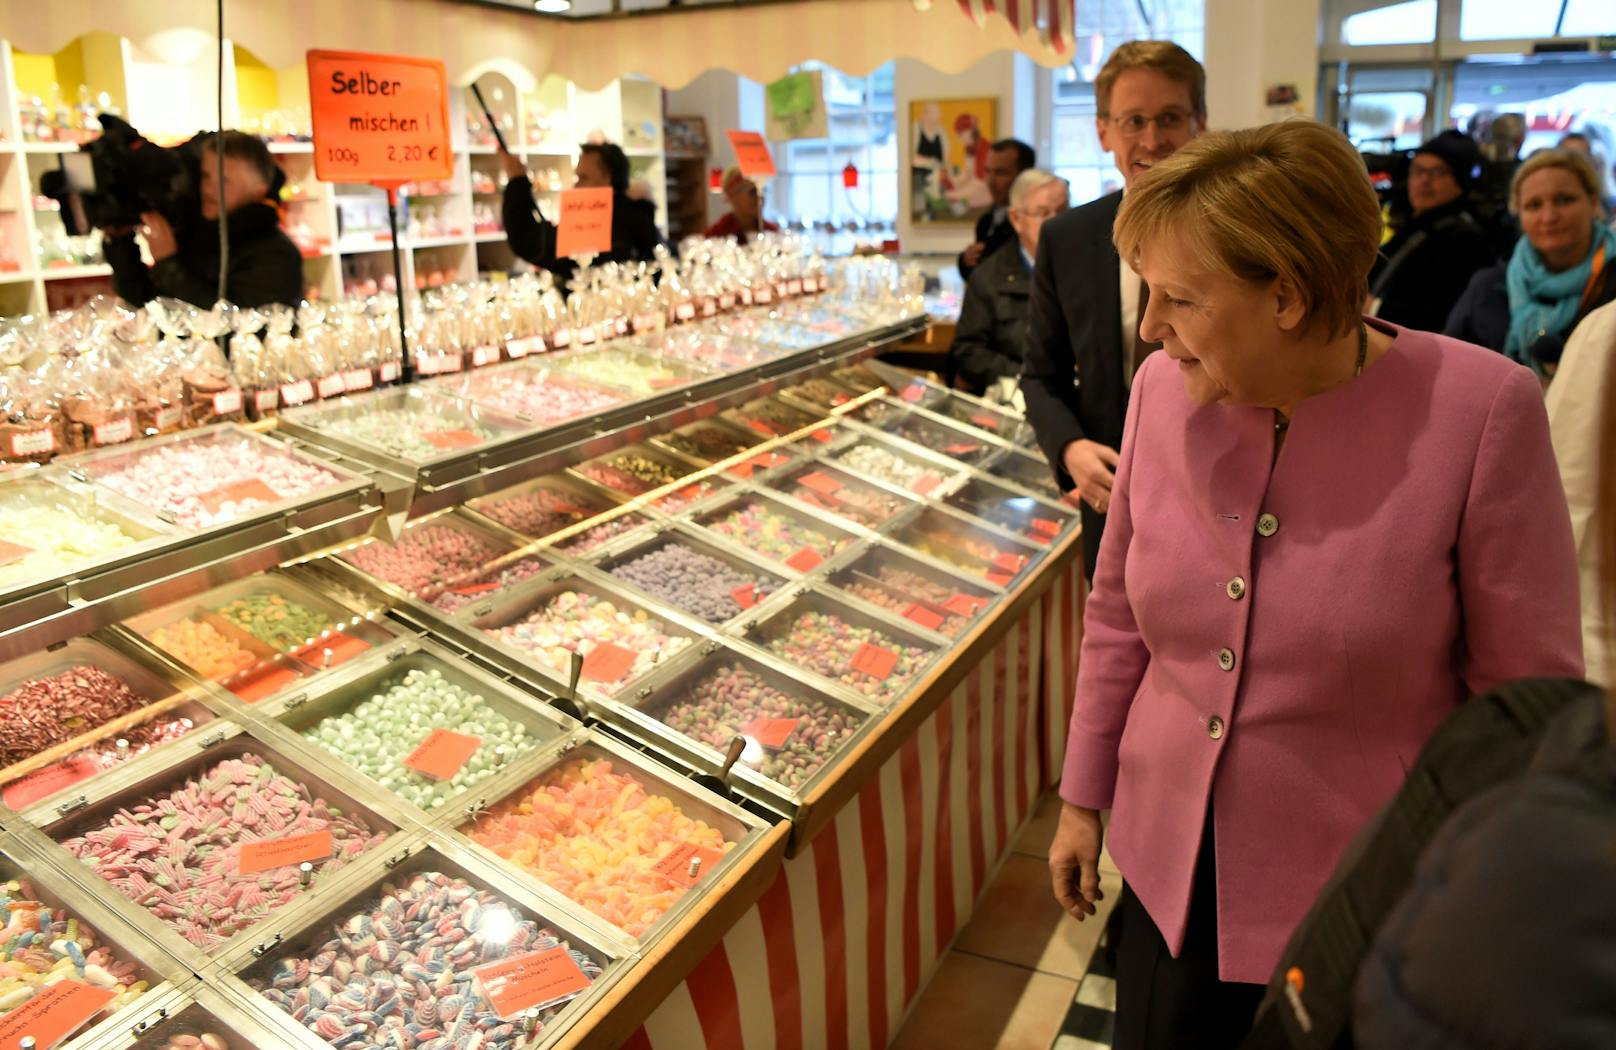 Schock für Merkel – Ex-Kanzlerin beim Shoppen bestohlen